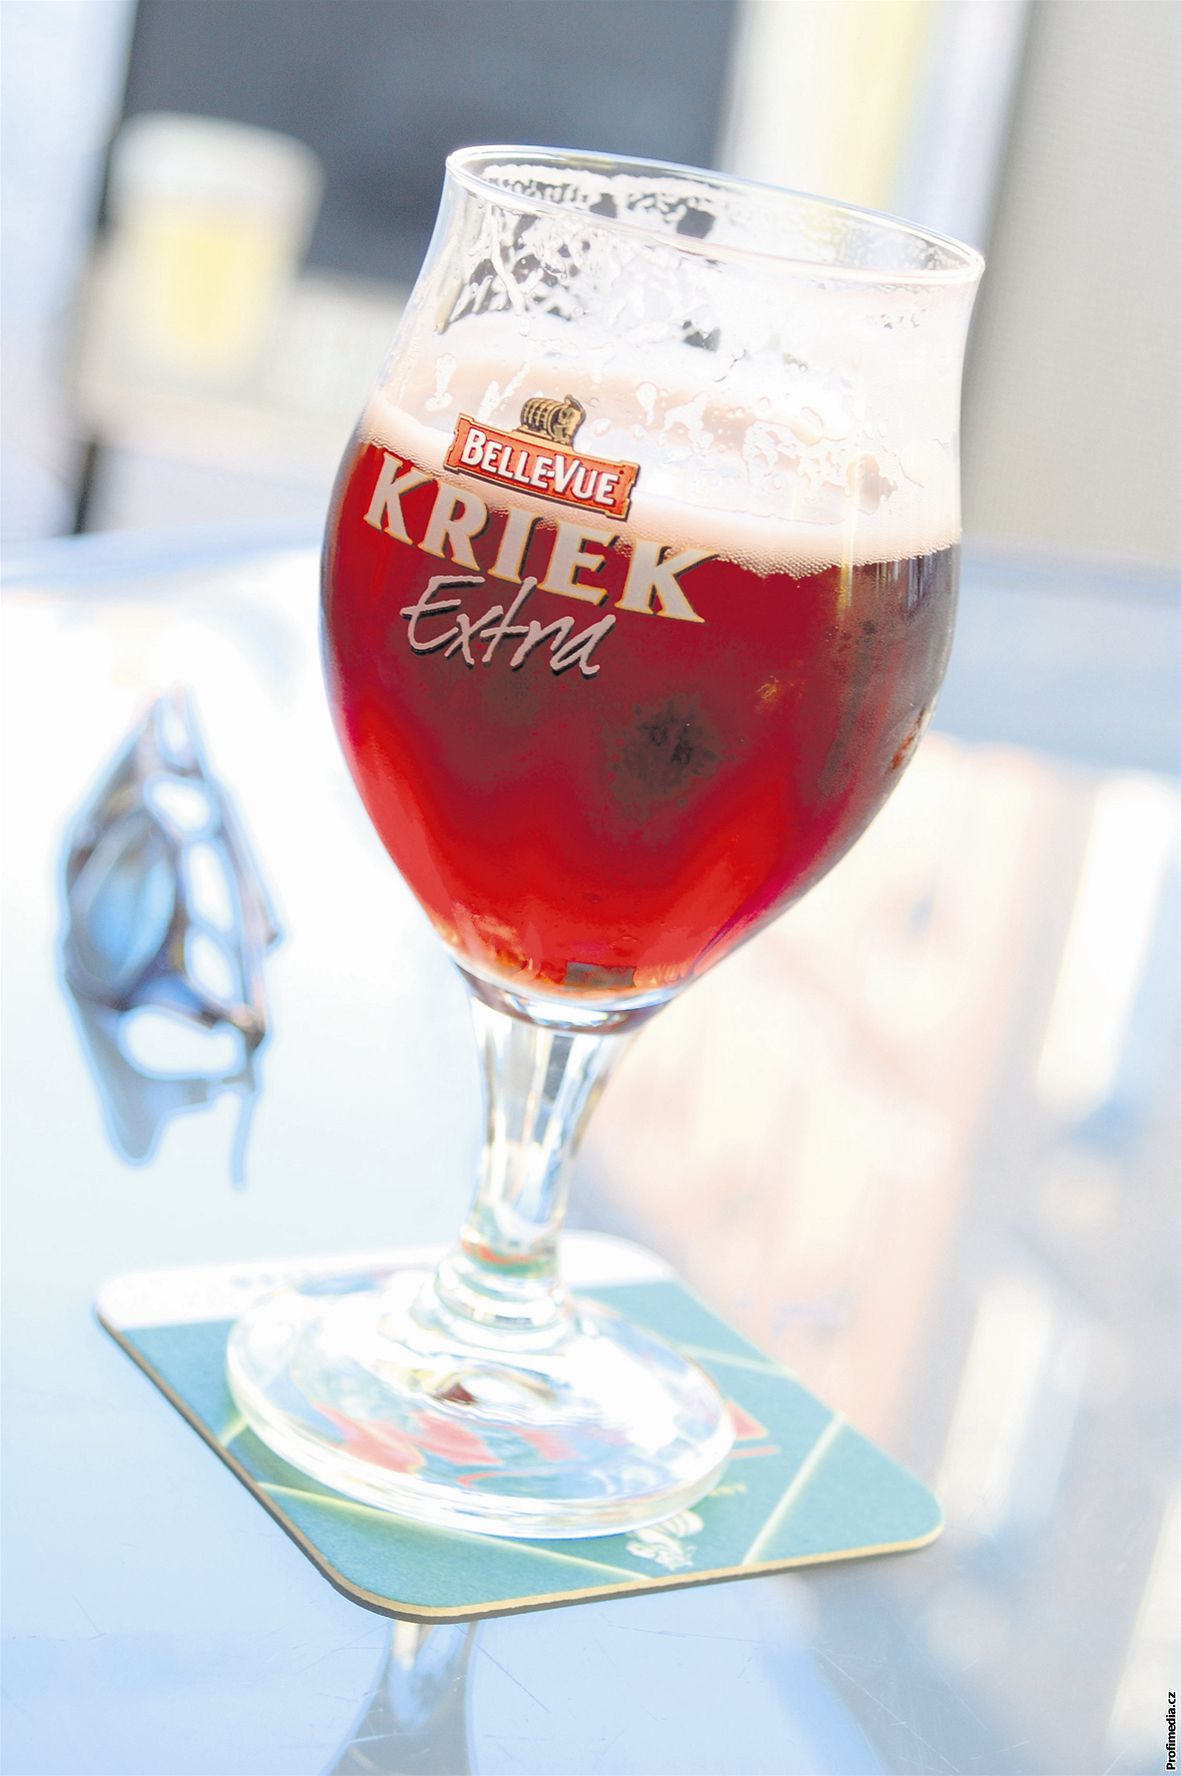 Belgické pivo Kriek voní po teních a má nakyslou chu.